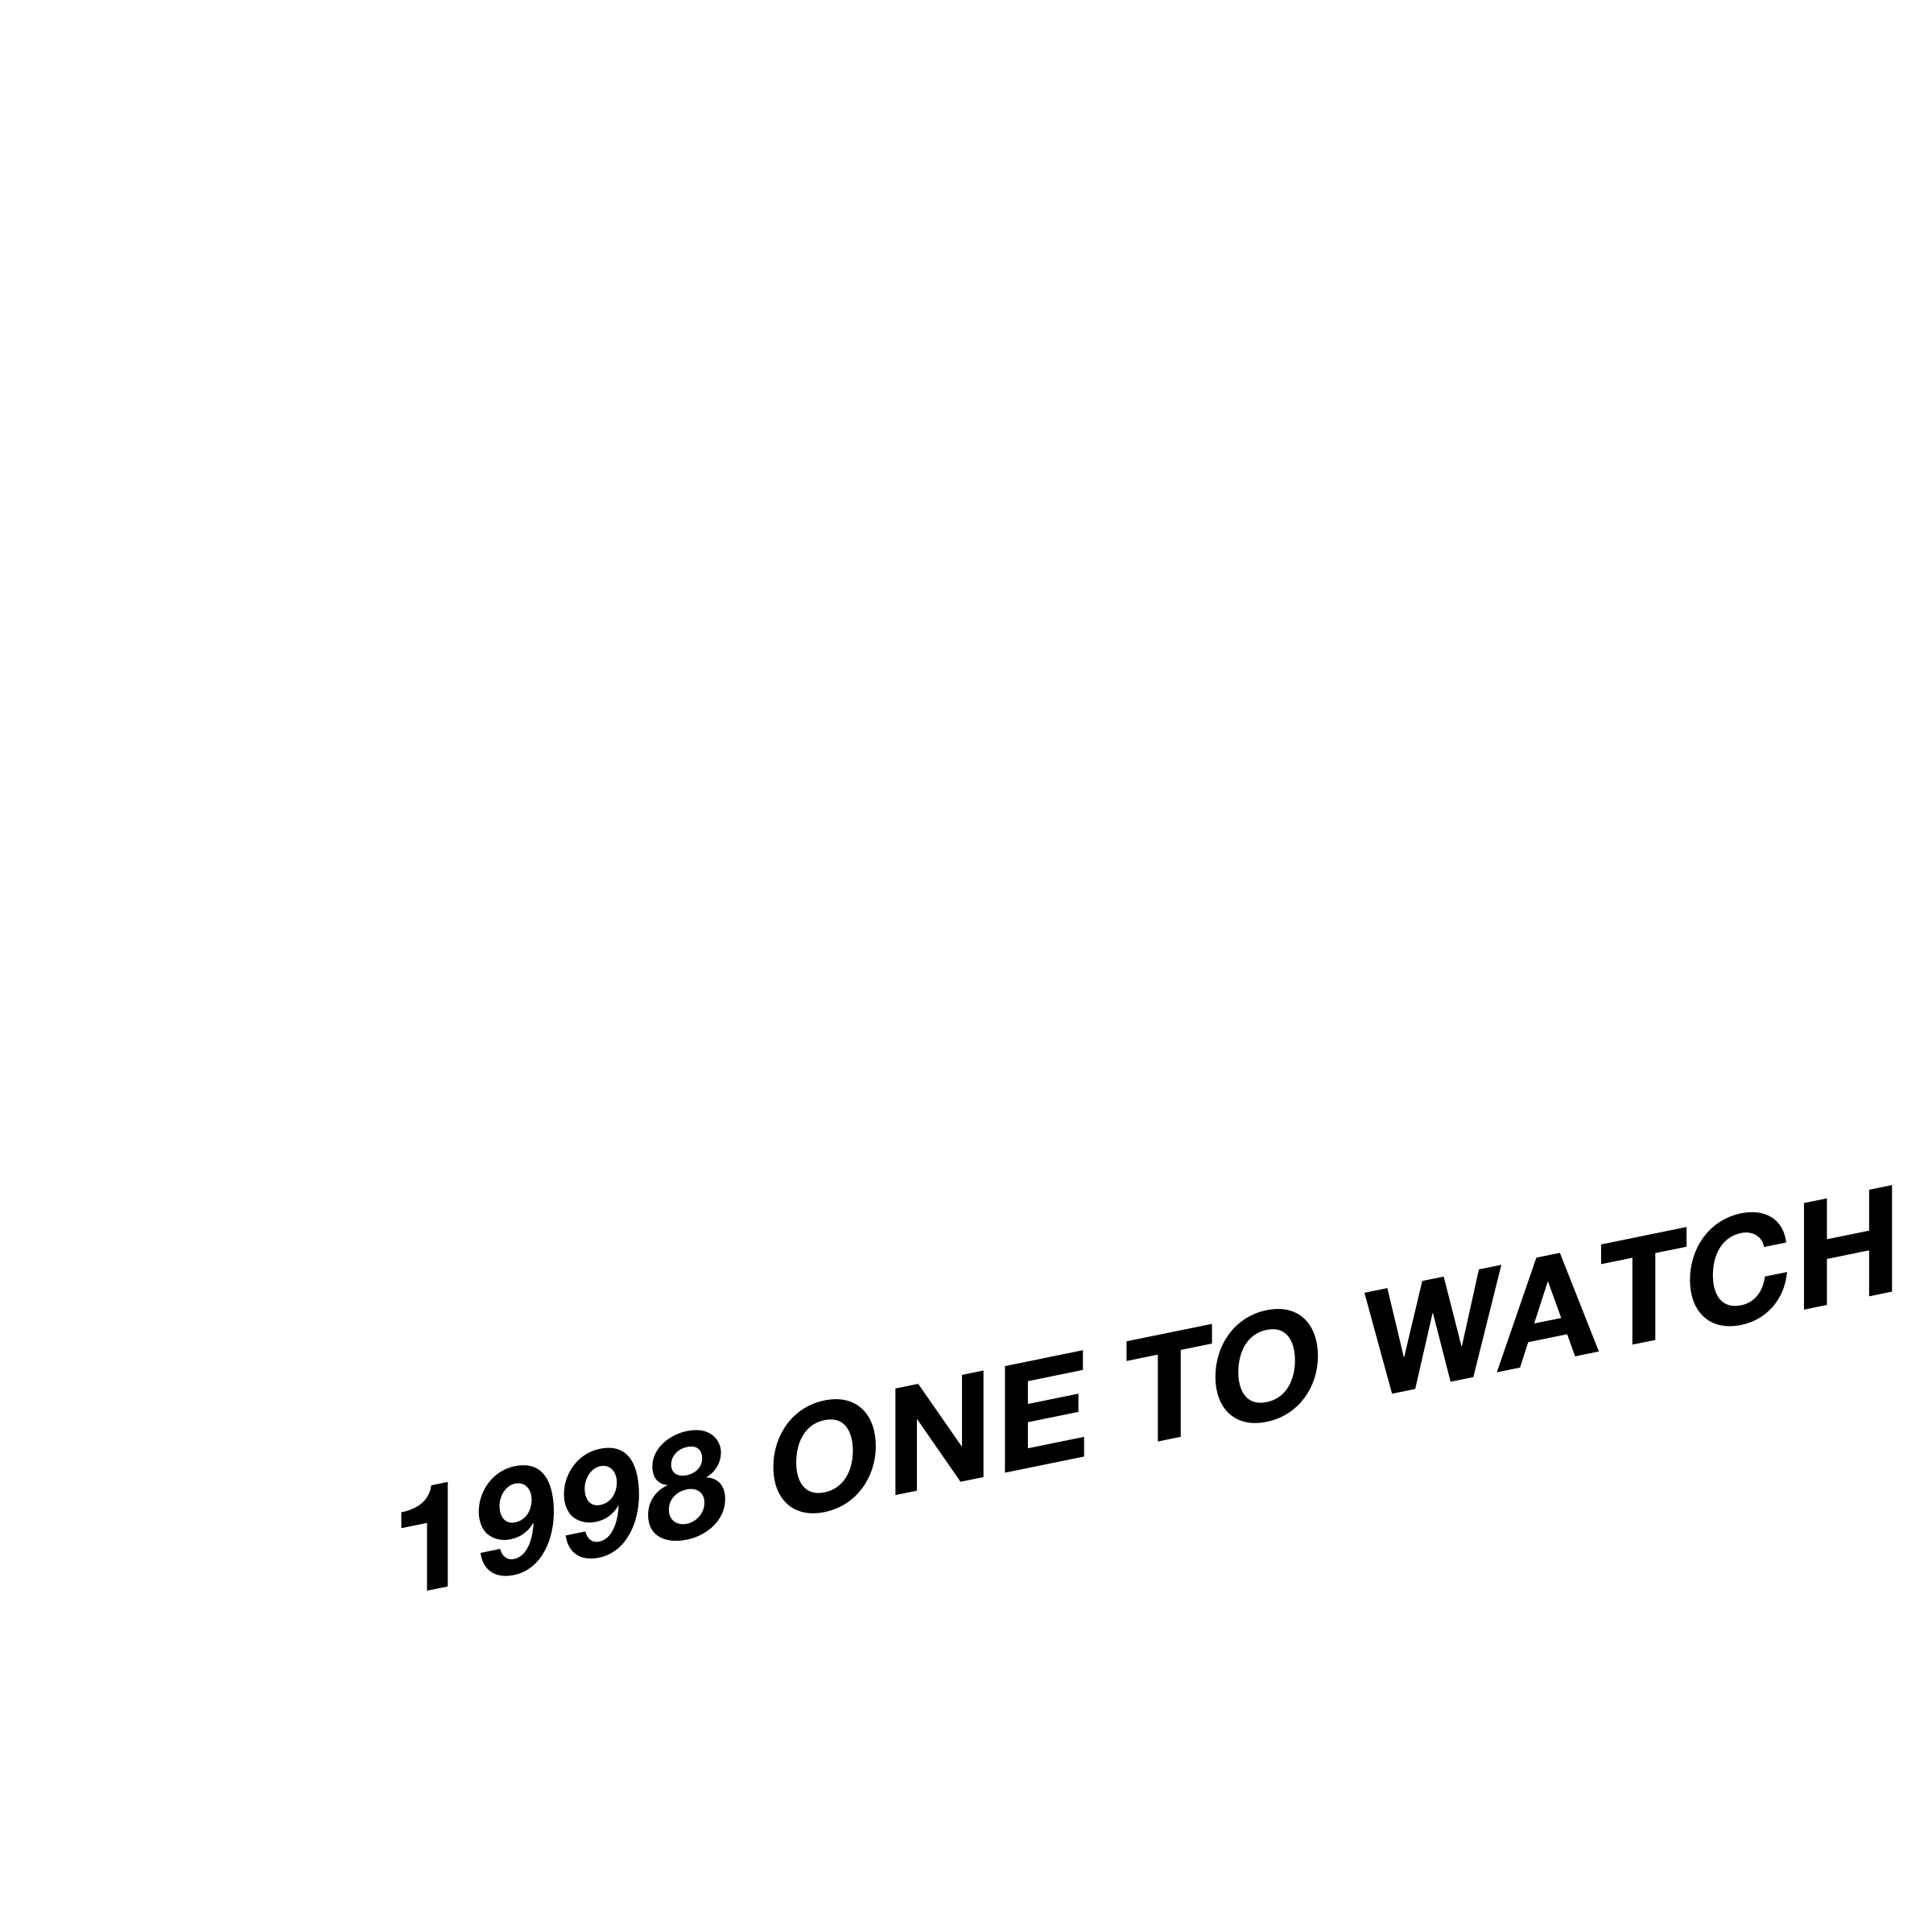 KMWorld Logo - KMWorld Logo PNG Transparent & SVG Vector - Freebie Supply